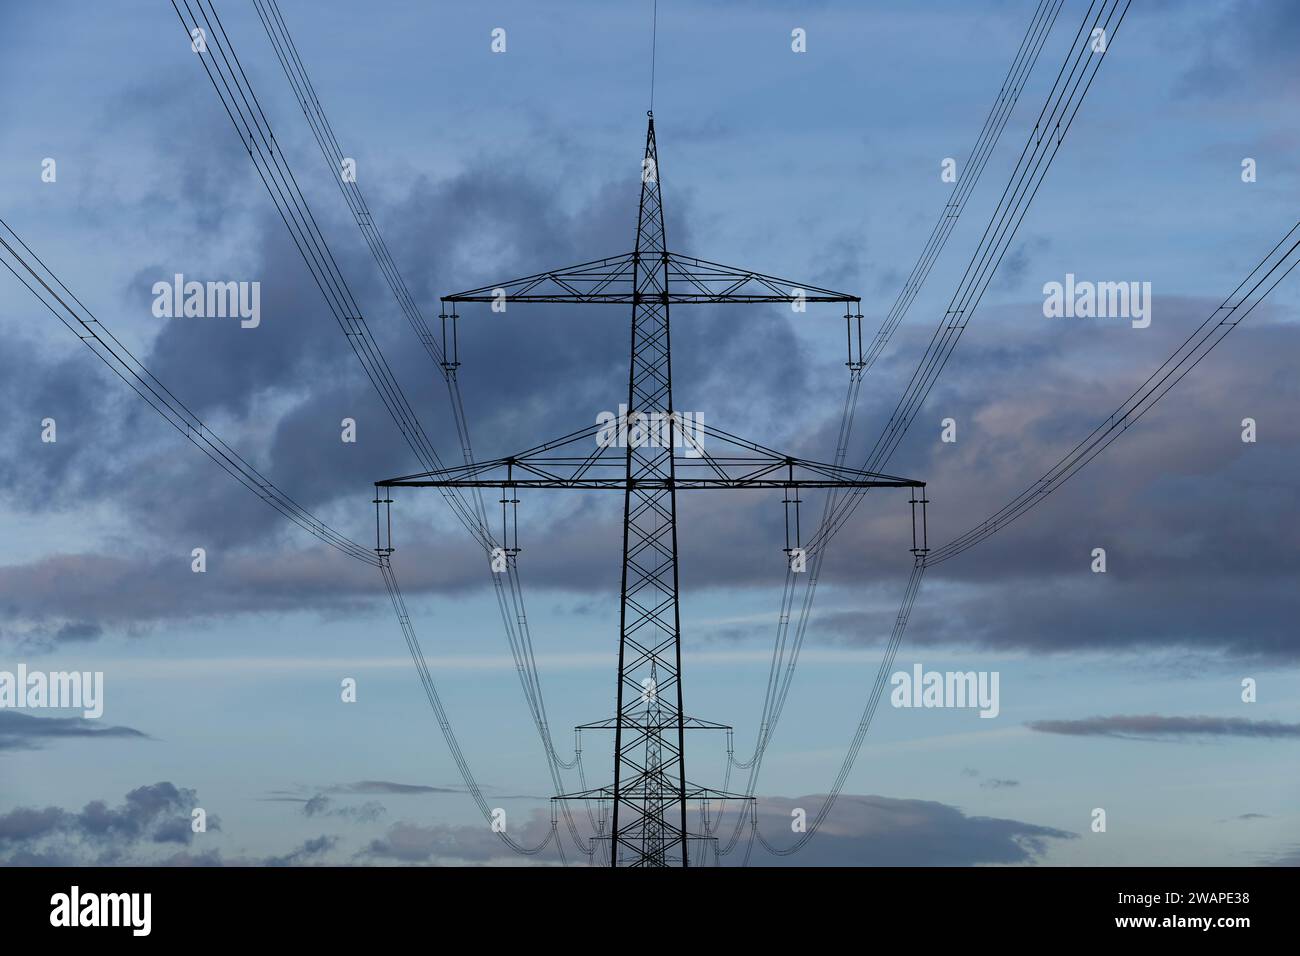 Photo minimaliste de pylônes à haute tension disposés géométriquement les uns derrière les autres avec une structure nuageuse intéressante. Banque D'Images